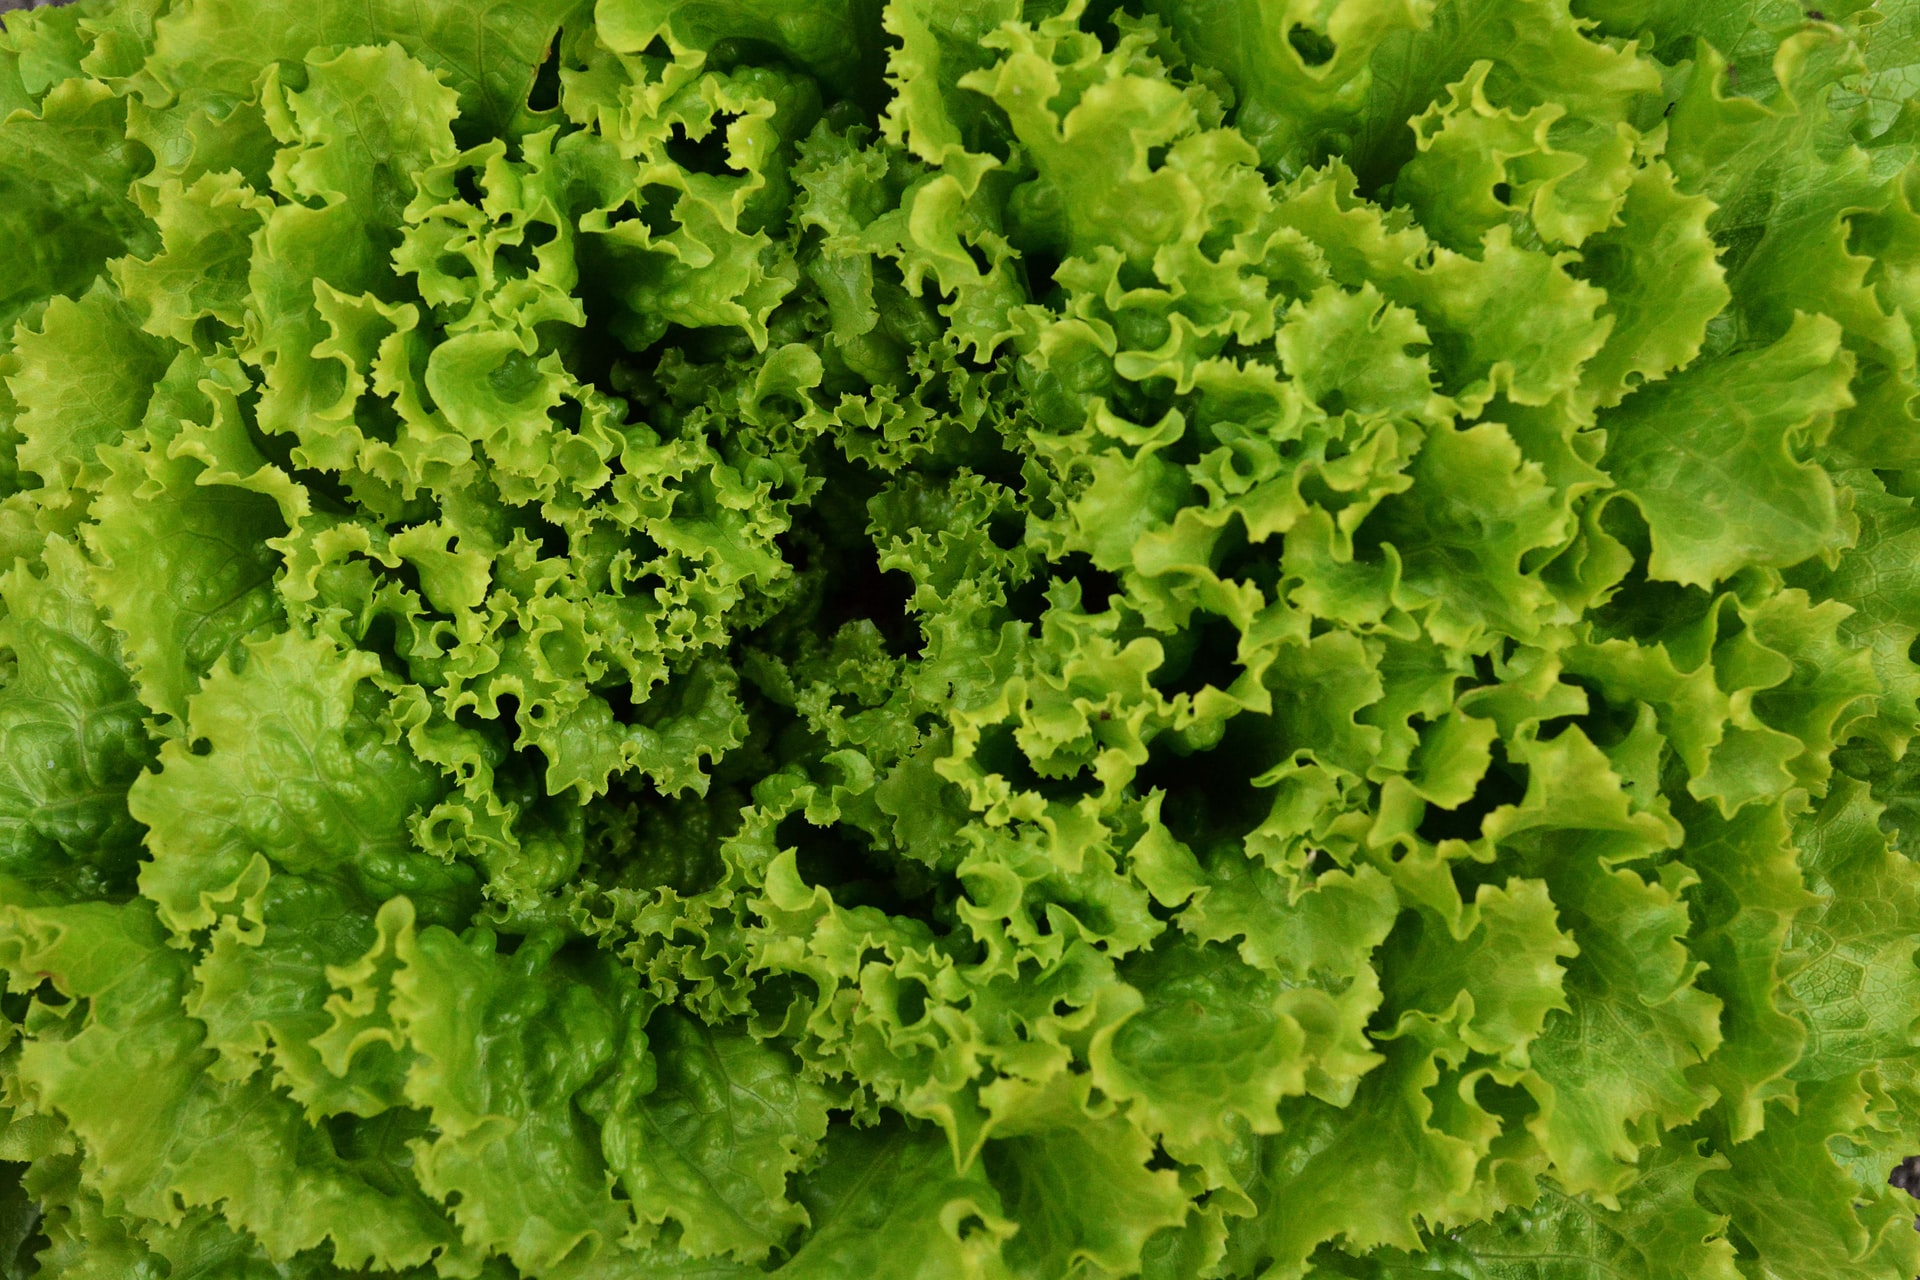 A alface é um vegetal folhoso, famoso por dar base a saladas. Existem vários tipos de alface, e todos eles compartilham o nome científico Lactuca sativa.